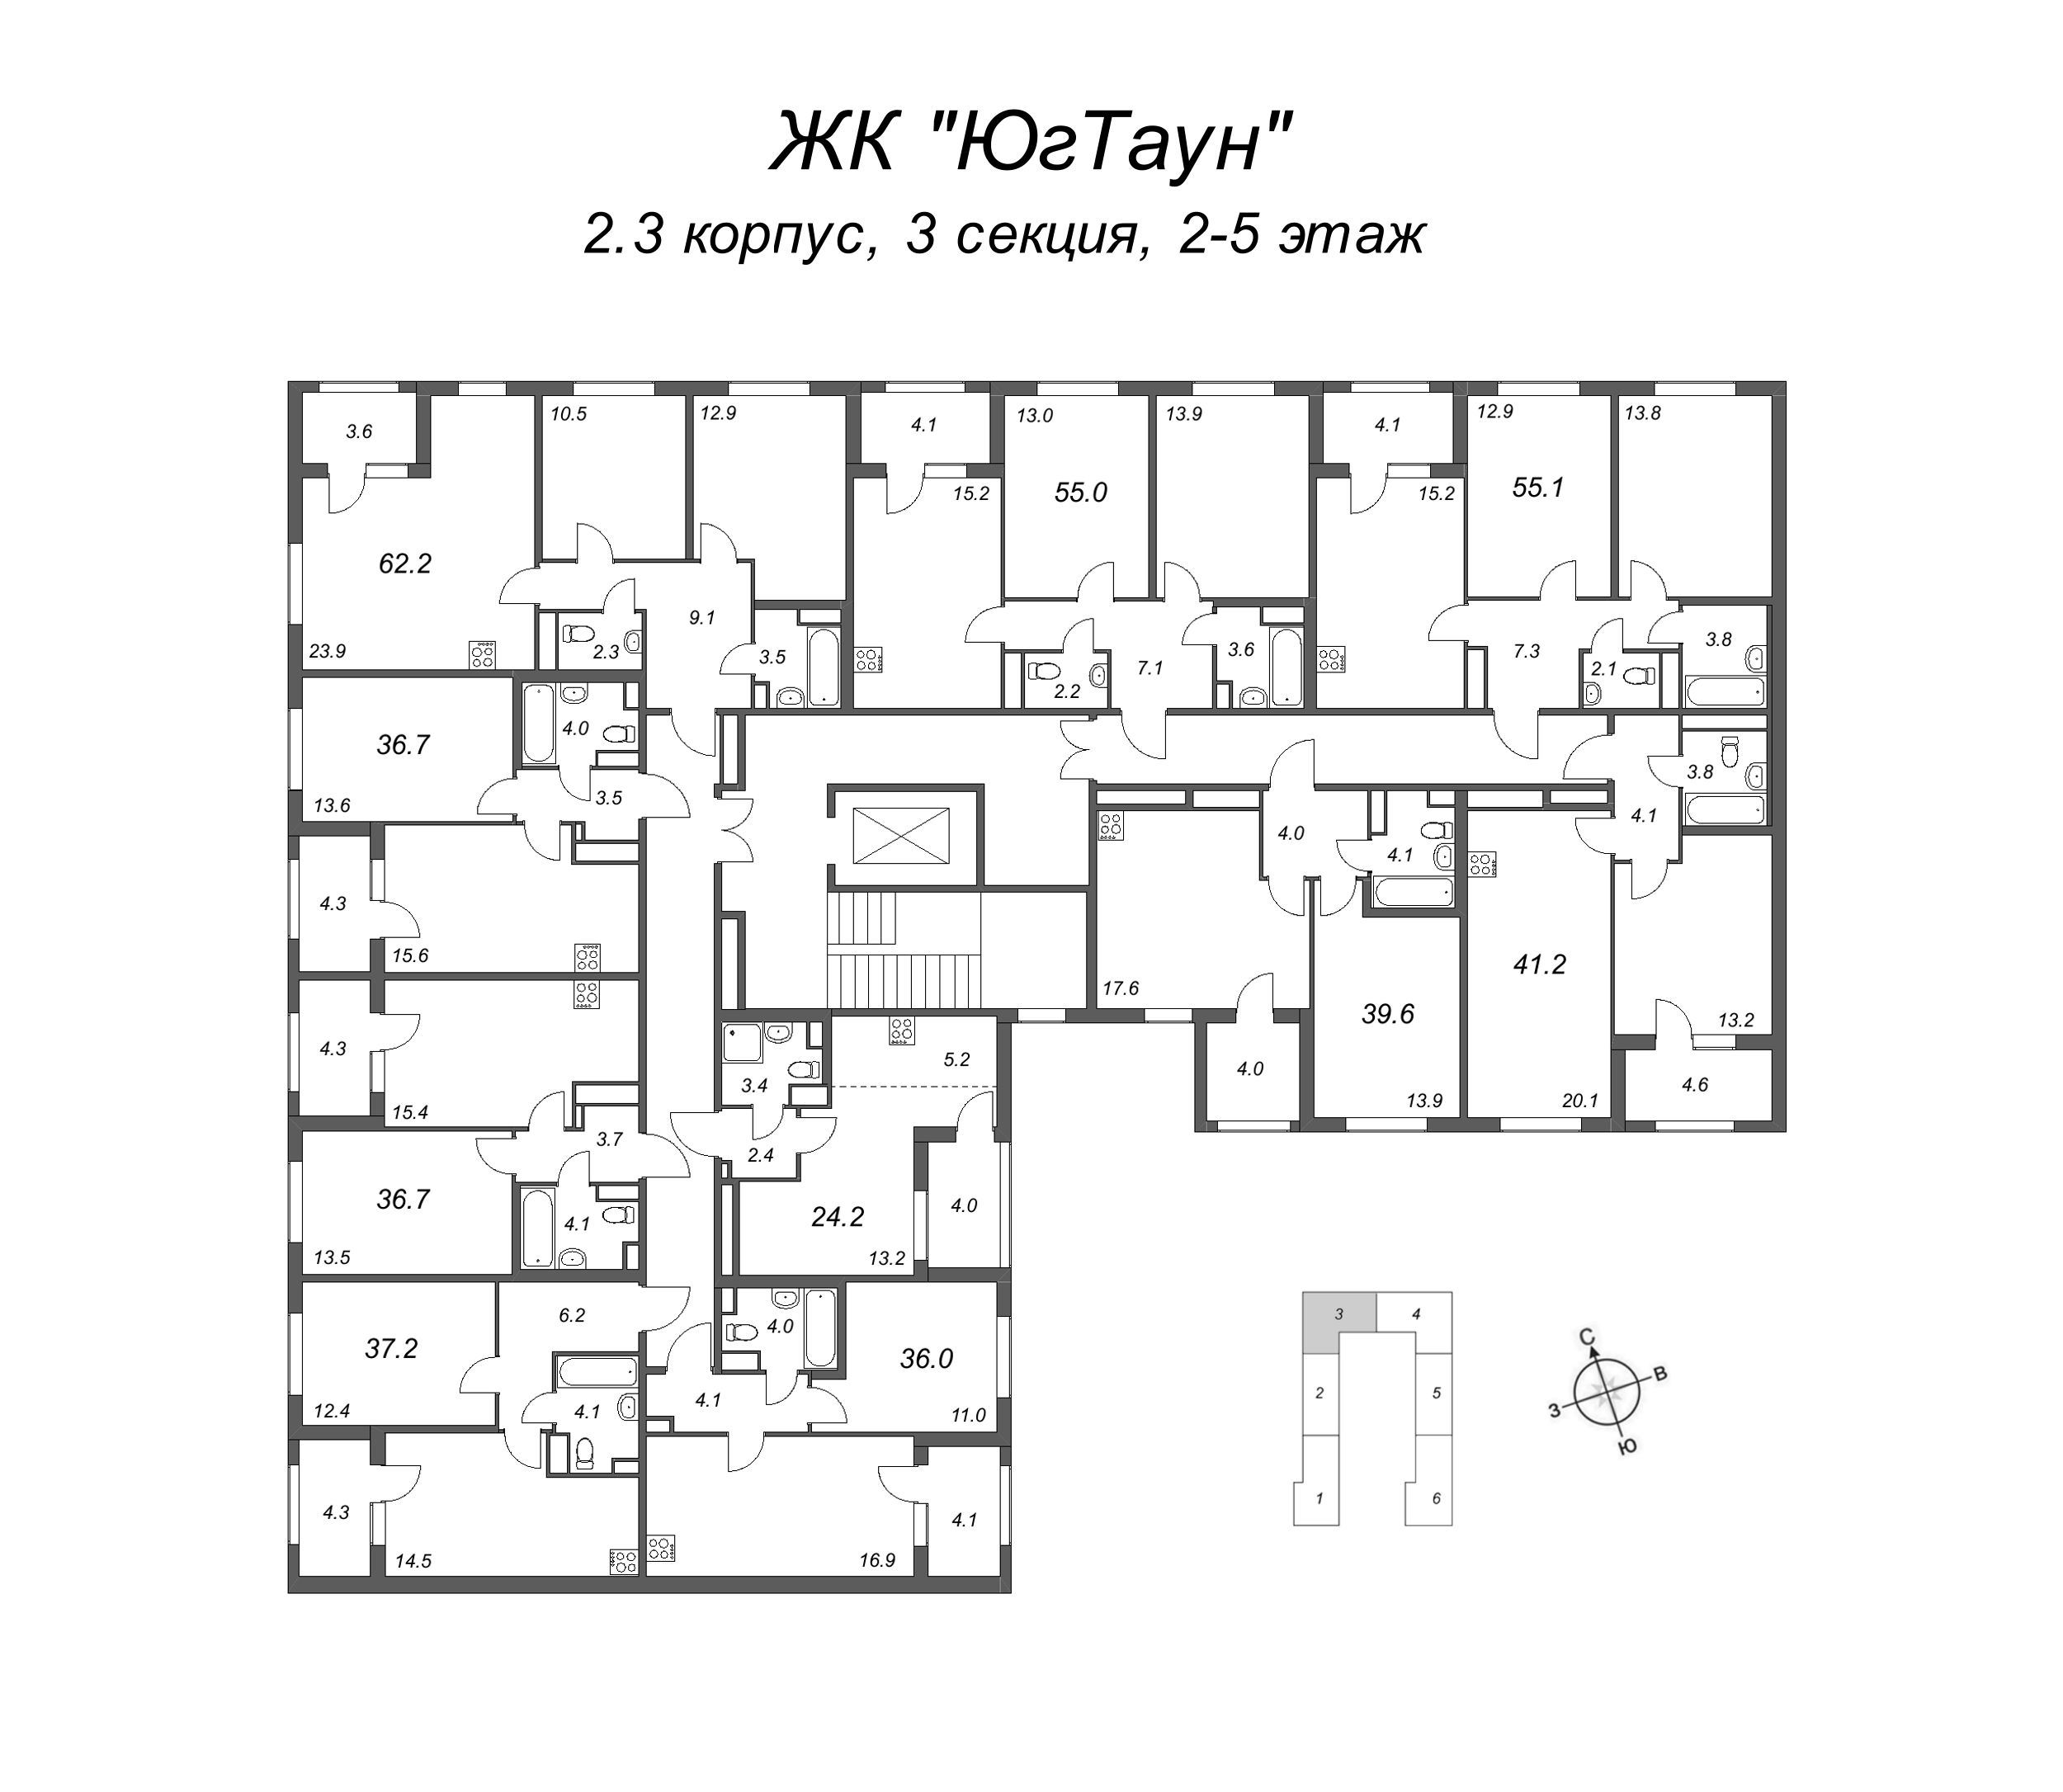 2-комнатная (Евро) квартира, 36 м² в ЖК "ЮгТаун" - планировка этажа